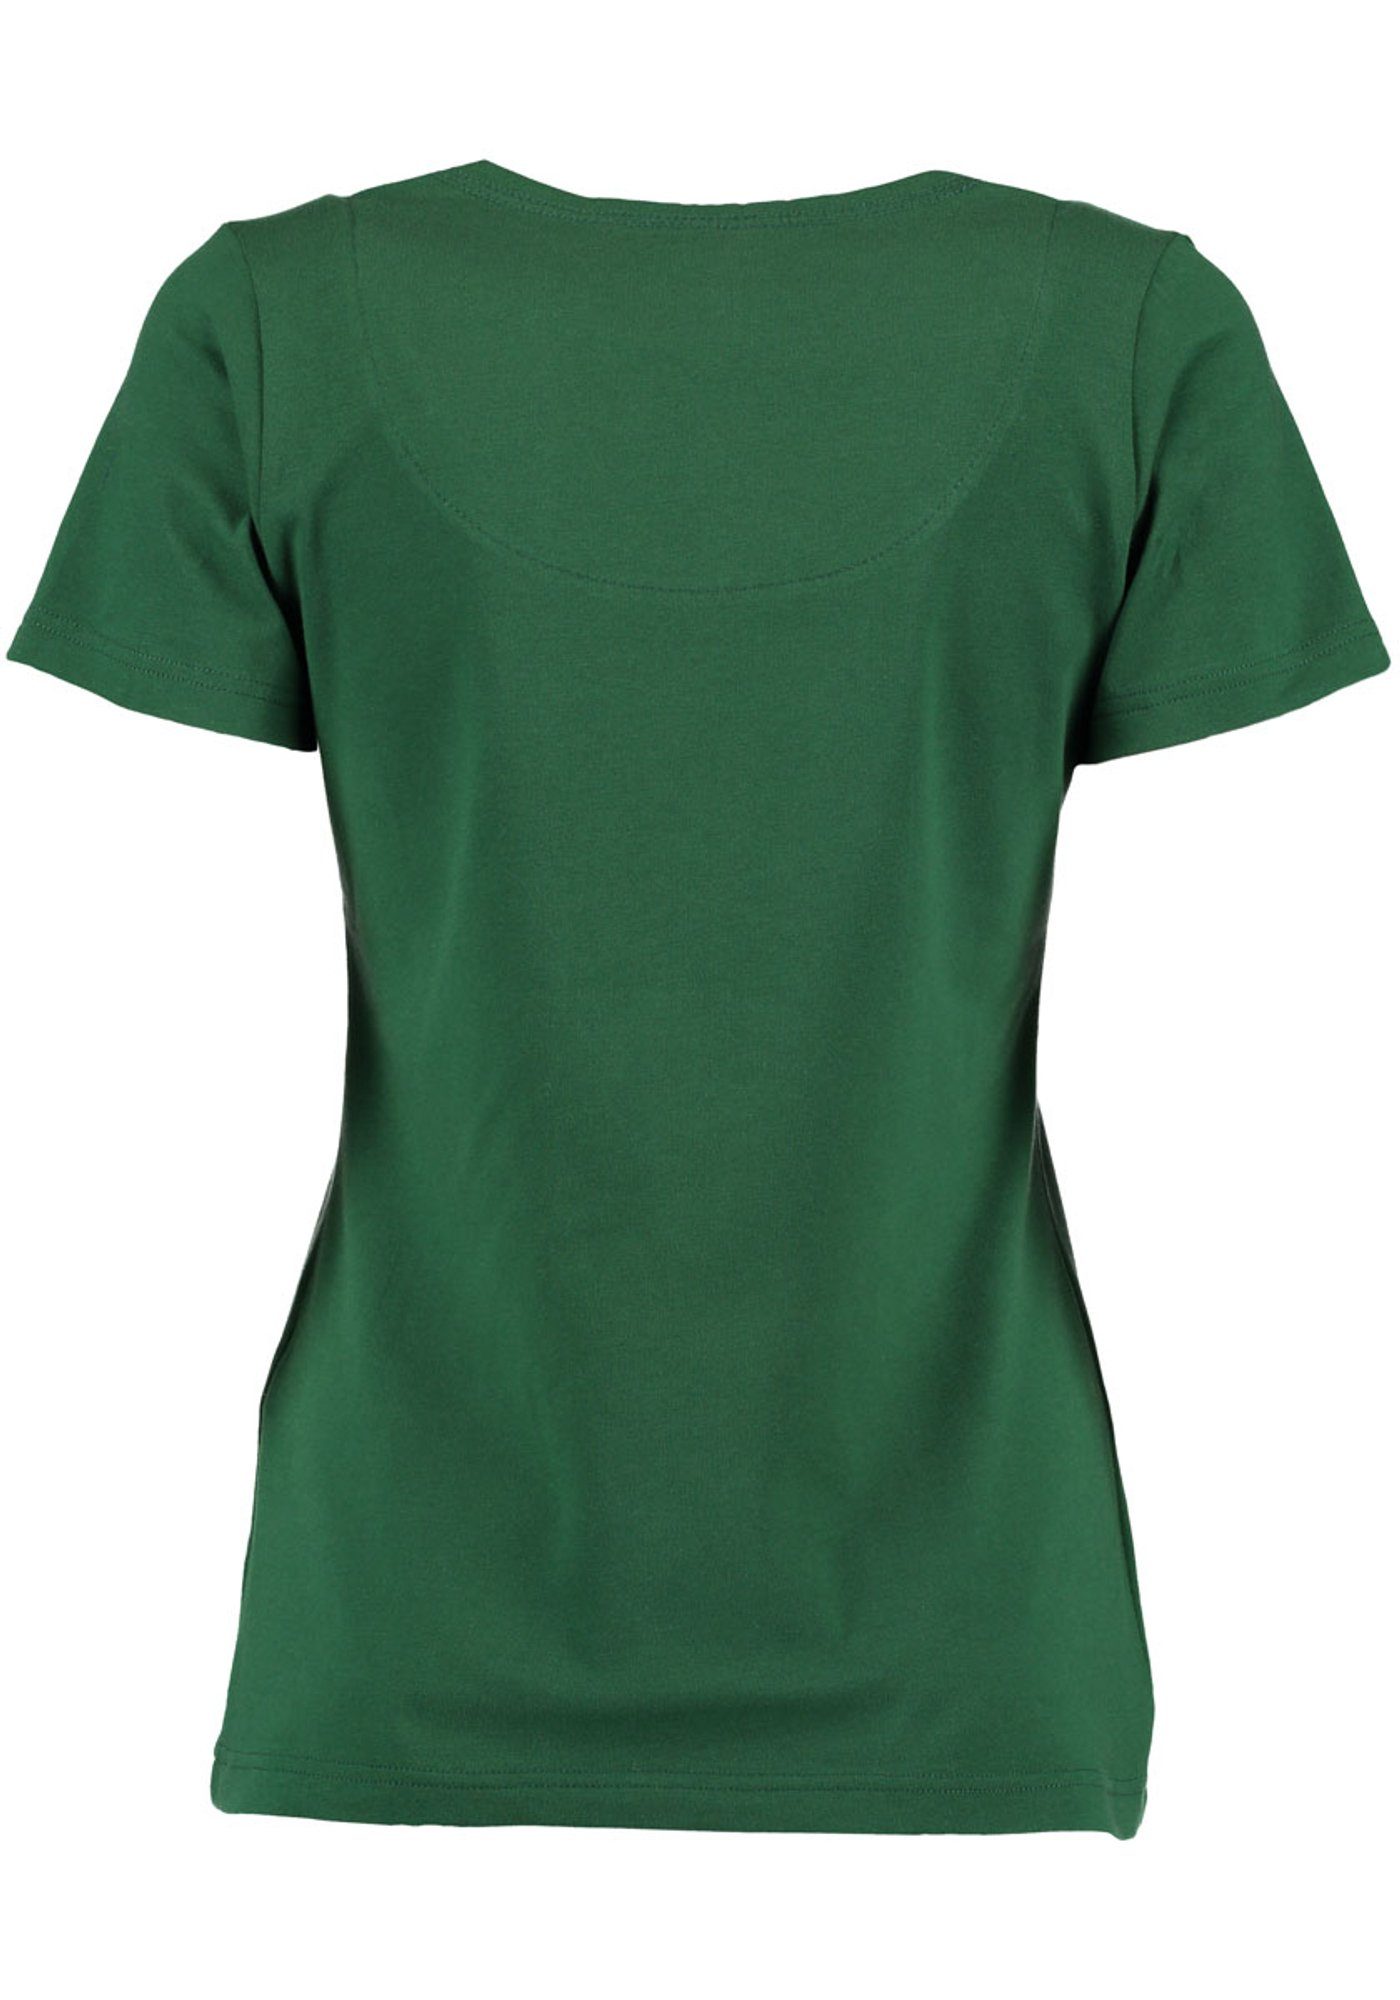 Strass-Hirsch Kurzarm mit T-Shirt Brust Trachtenshirt auf OS-Trachten Uginoy trachtengrün der